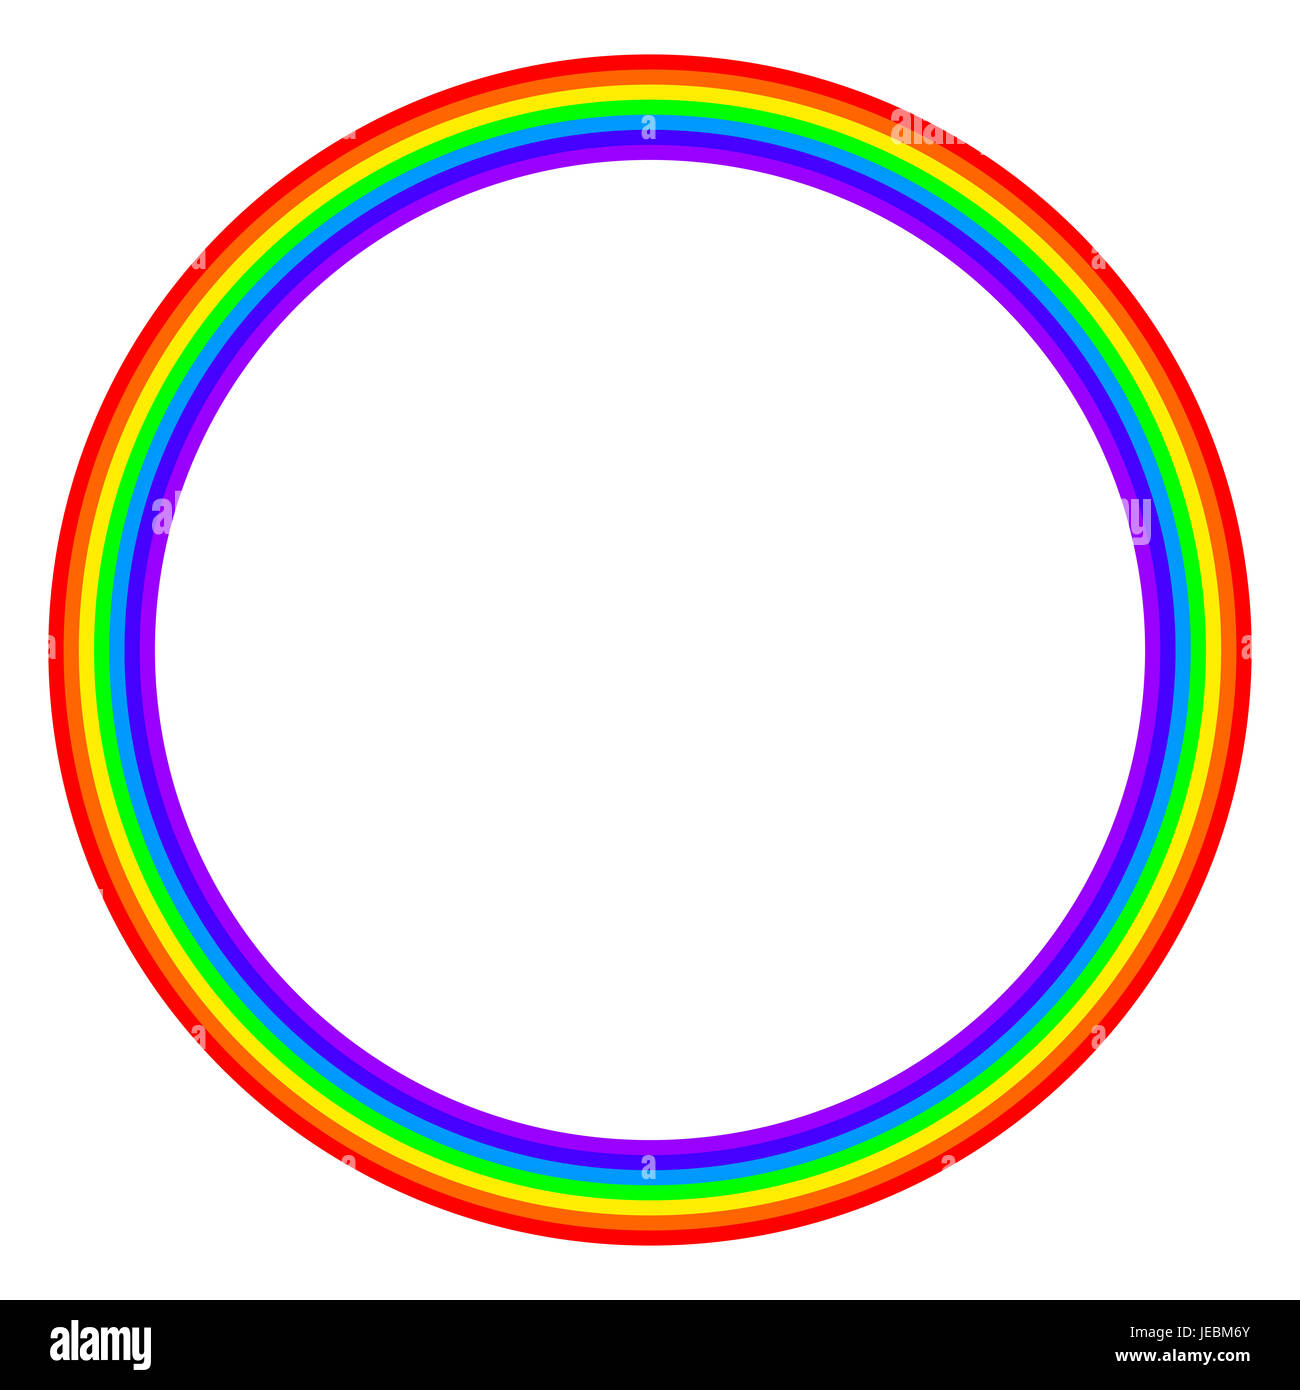 Regenbogen farbige Kreis auf weißem Hintergrund. Ring mit Regenbogen-Bands in sieben Hauptfarben des Spektrums und sichtbares Licht. Stockfoto